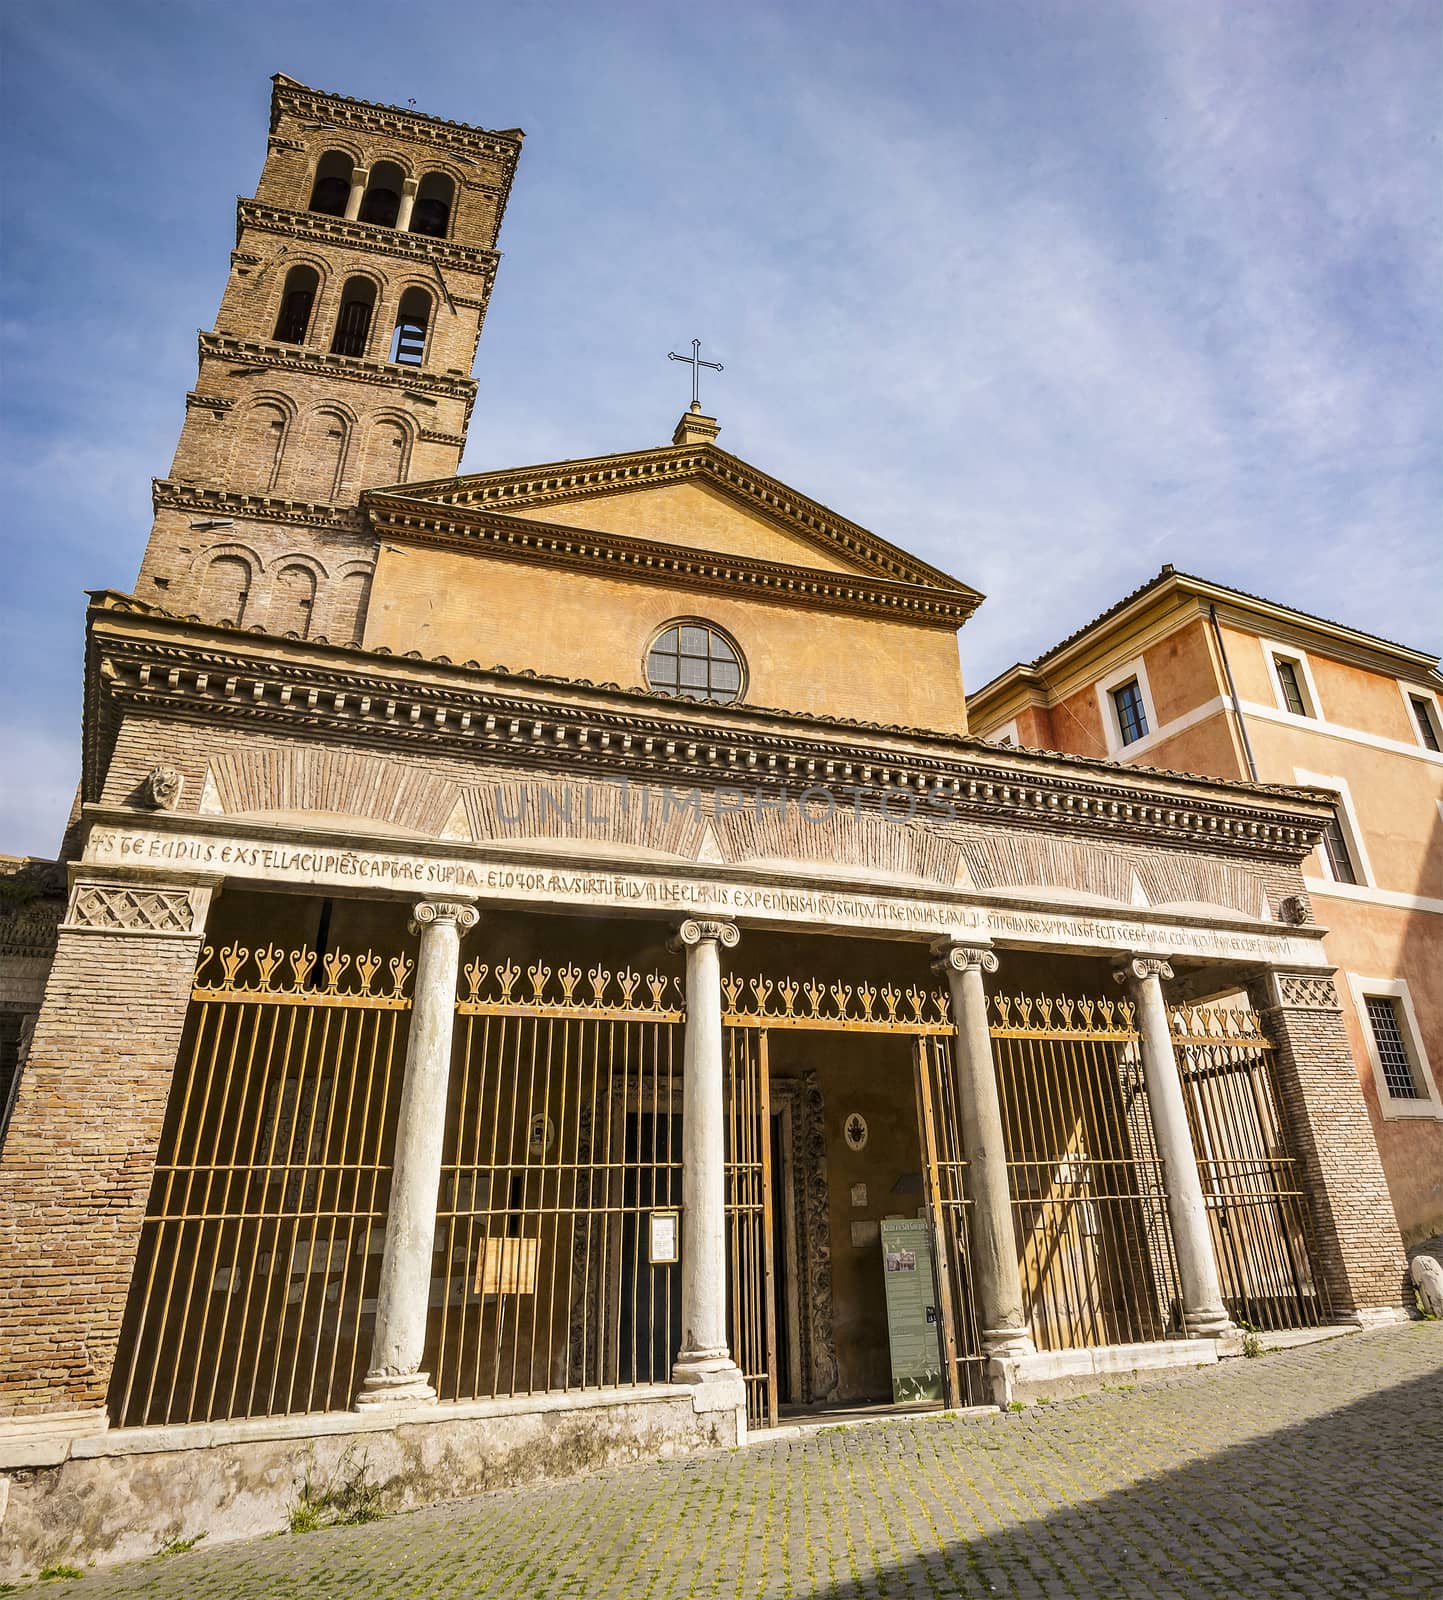 San Giorgio in Velabro church facade in Rome by rarrarorro